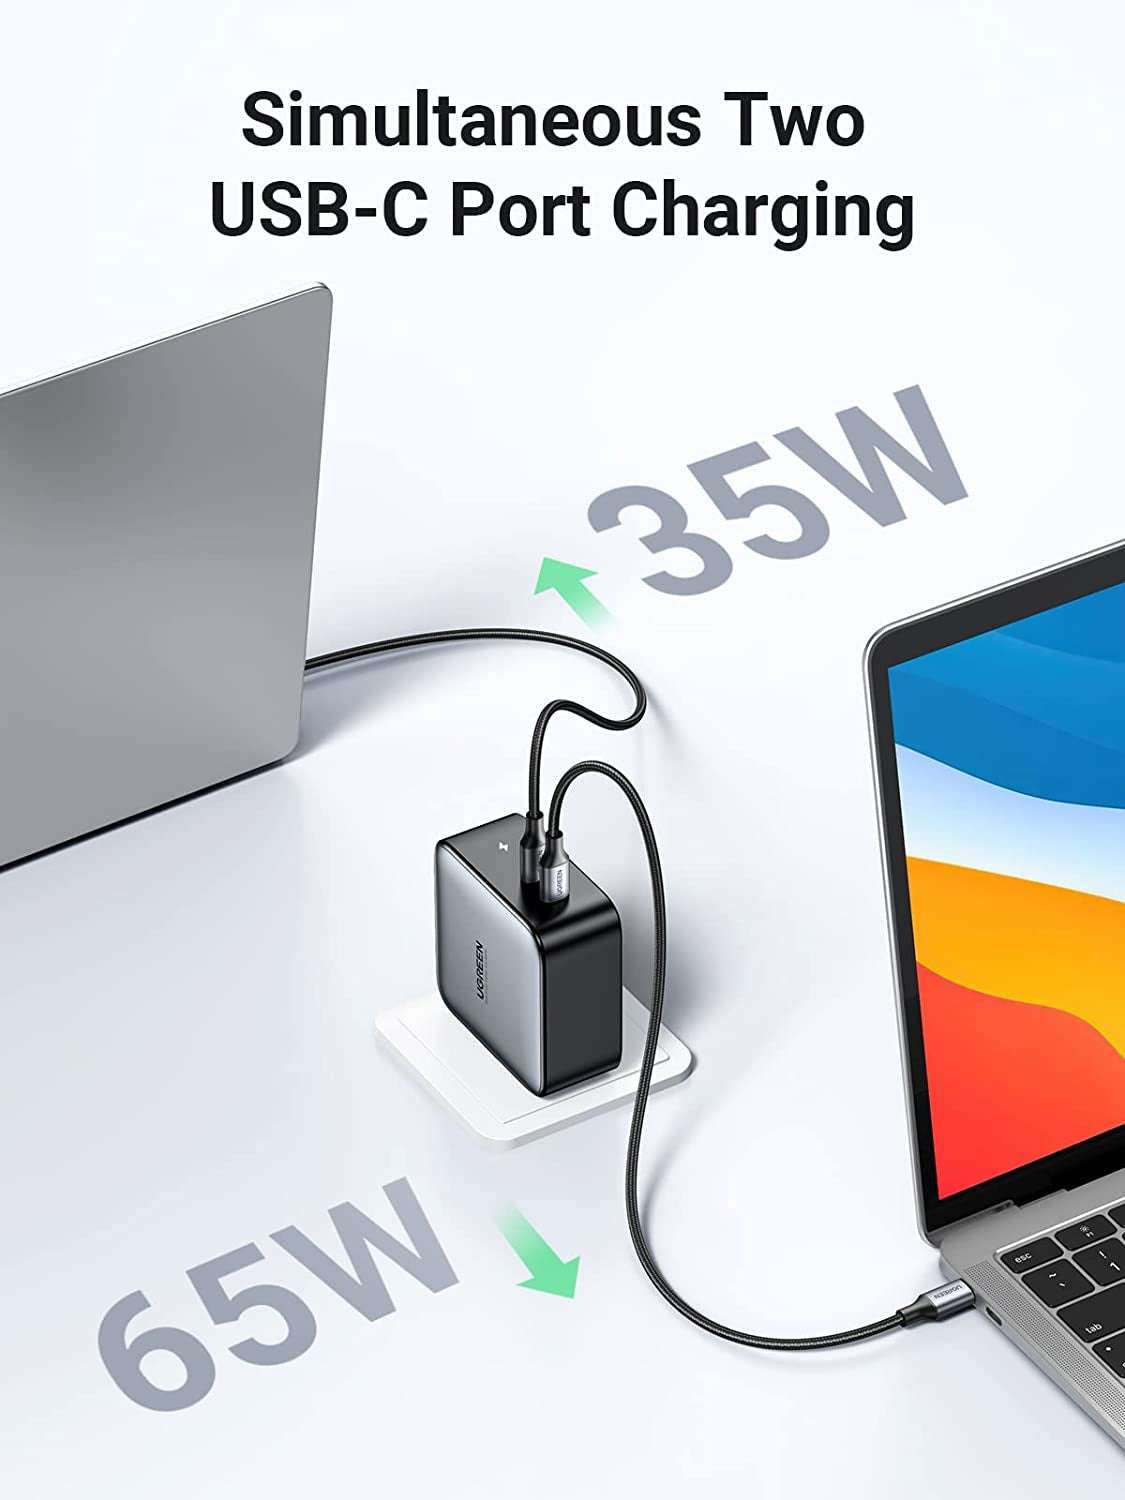 Chargeur 5 ports USB dont 1 USB-C Anker PowerPort+ compatible Xiaomi Mi  Notebook Air à 29€99 @